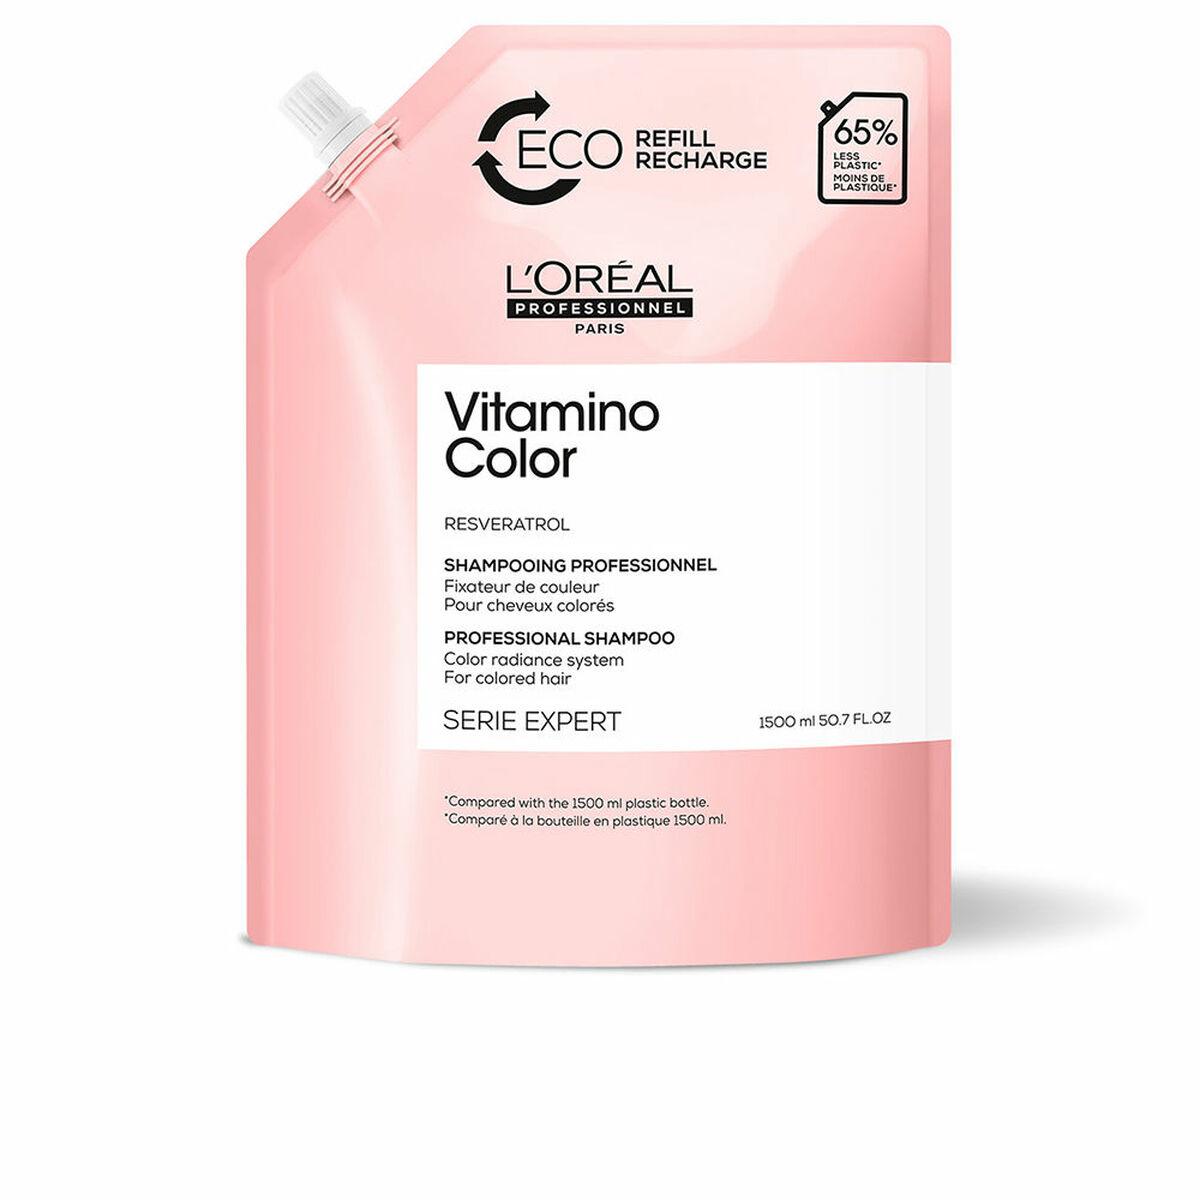 Billede af Shampoo til farvebevaring L'Oreal Professionnel Paris Vitamino Color Genopfyldning: 1,5 L